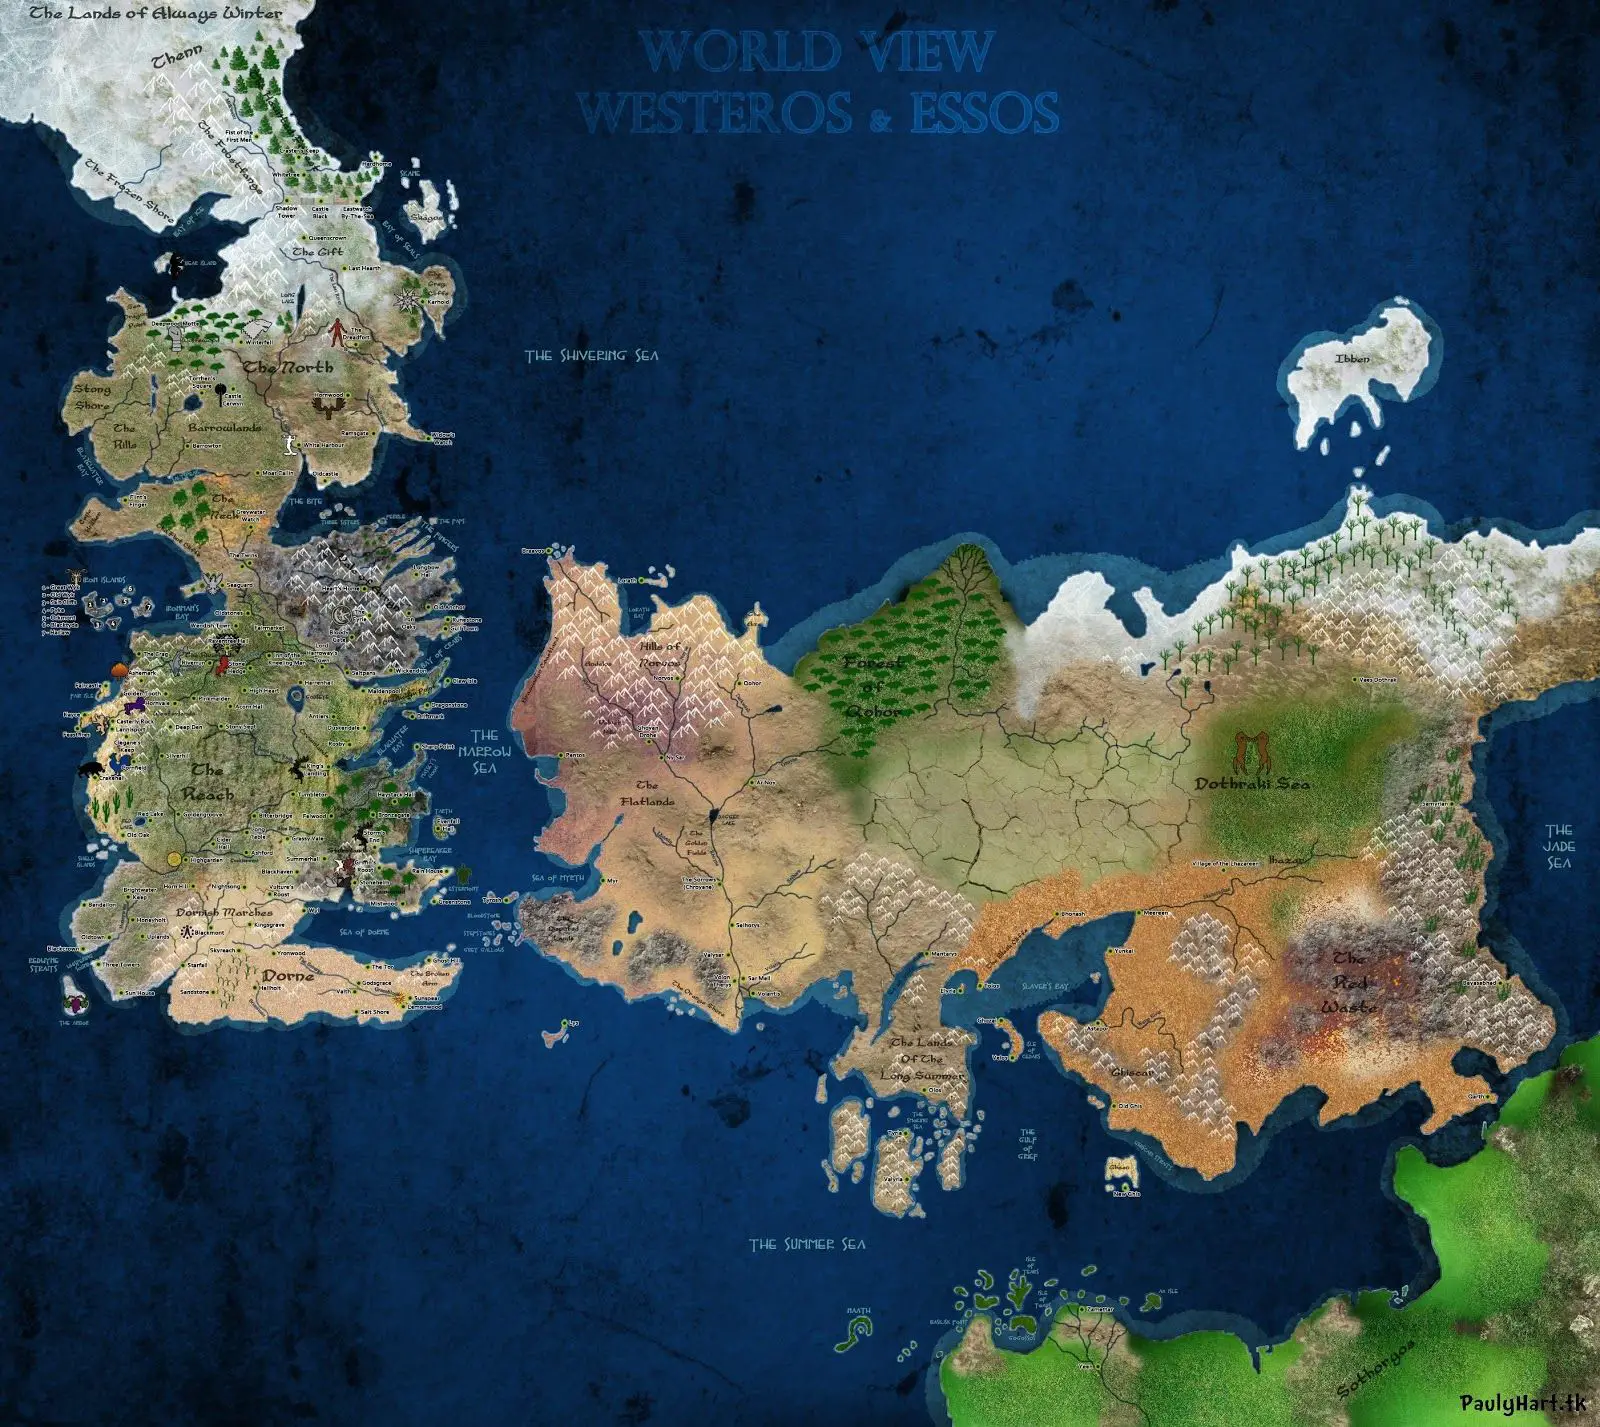 15 mapas de ficción, de "Juegos de Tronos" a "El Señor de los Anillos".